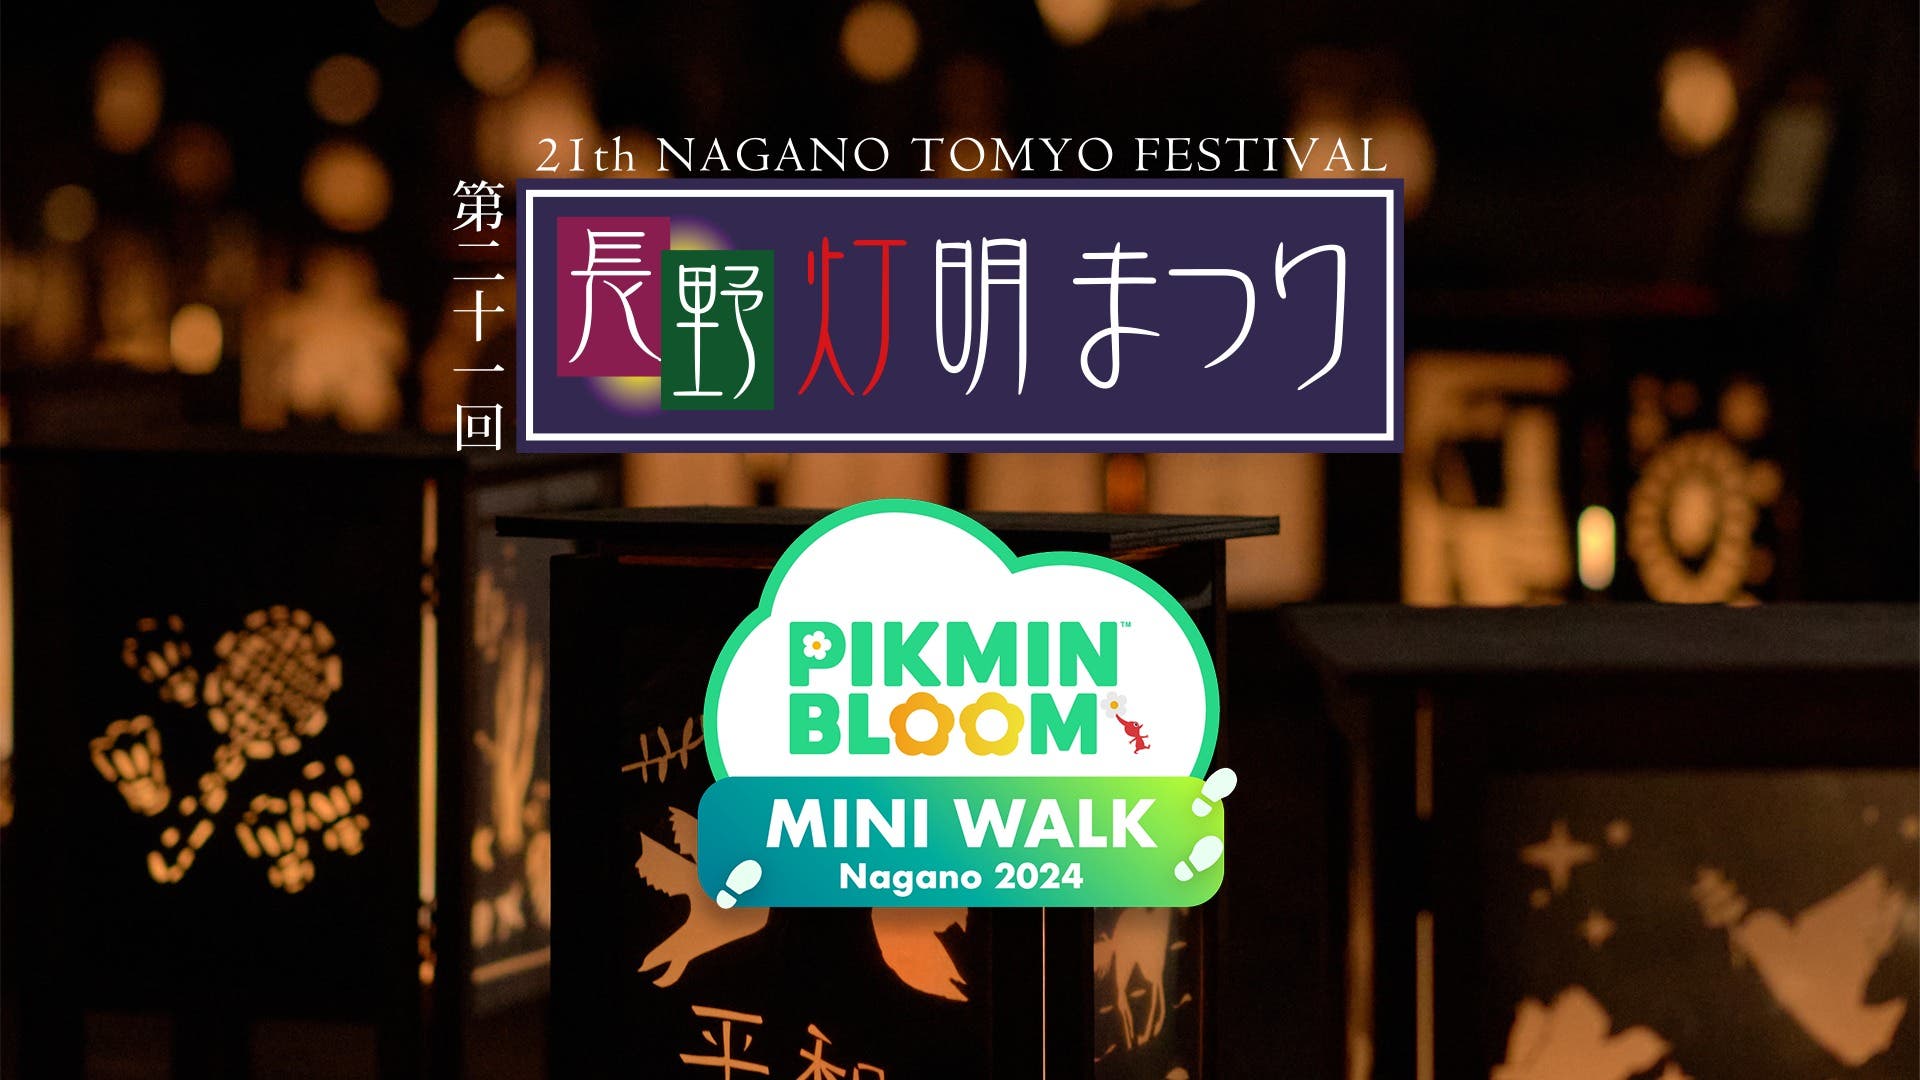 Pikmin Bloom detalla su nuevo minievento MINI WALK en el 21º Festival Nagano Tomyo